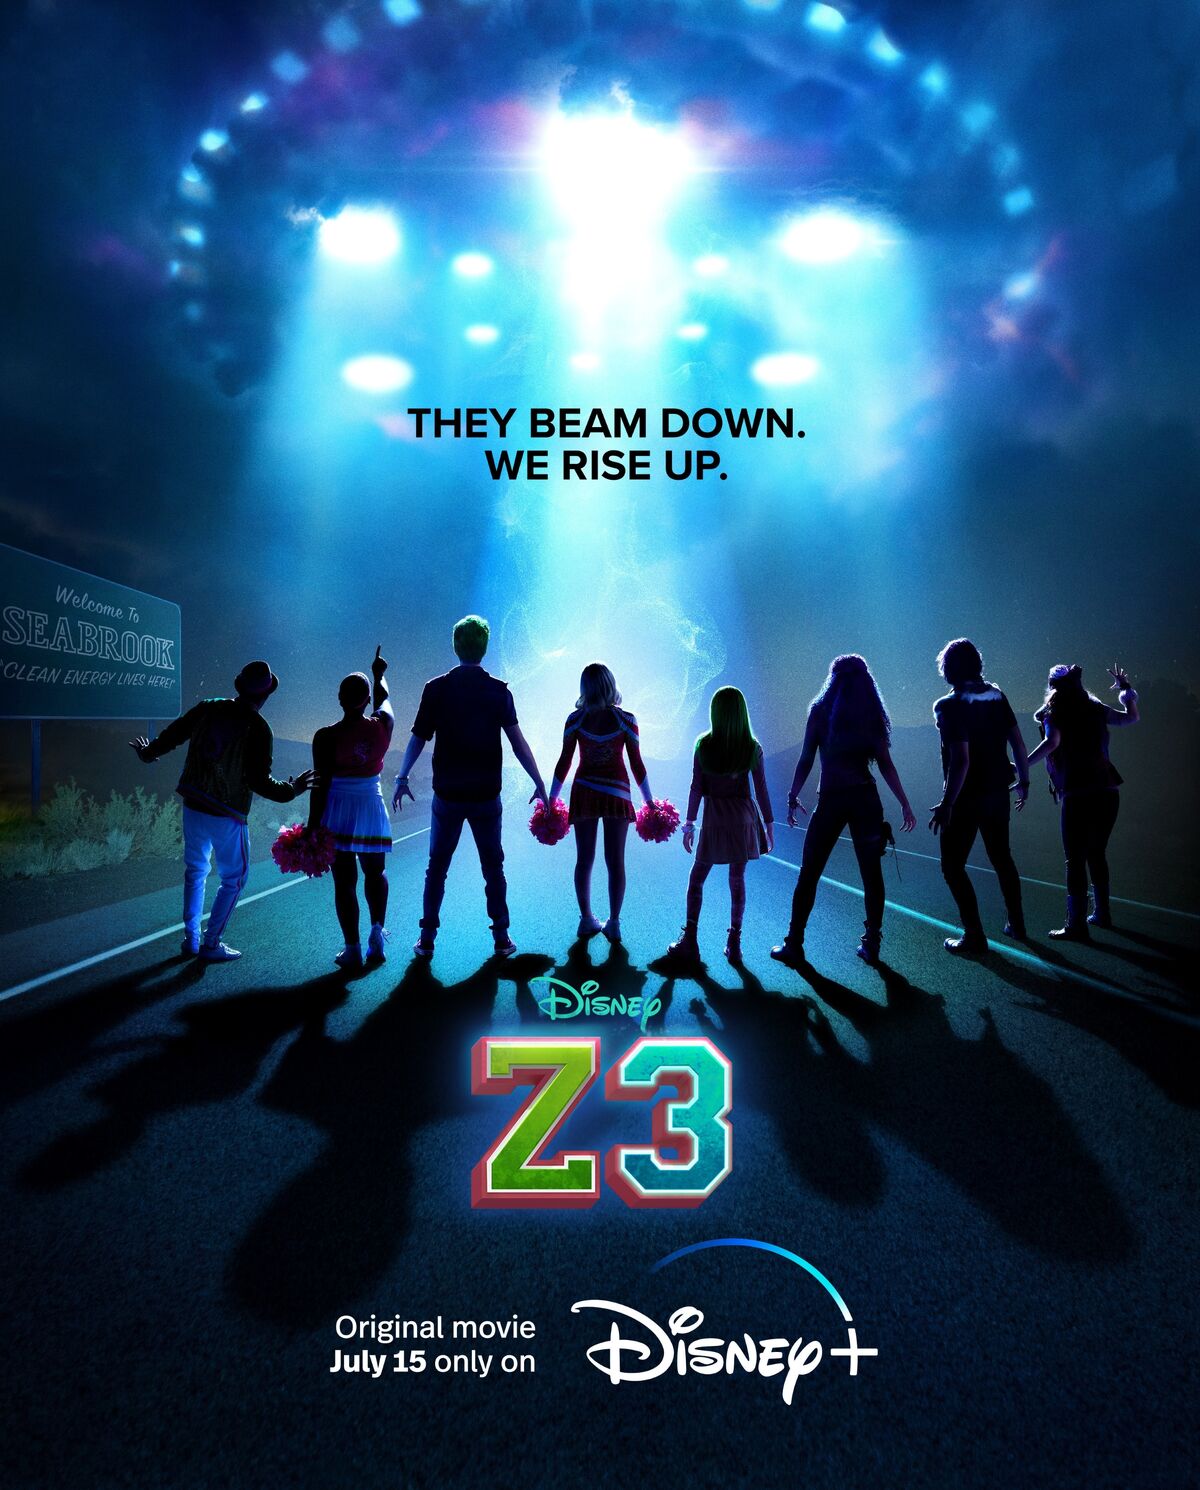 ZOMBIES 1 & 2 Recap!, ZOMBIES 3, Disney Original Movie